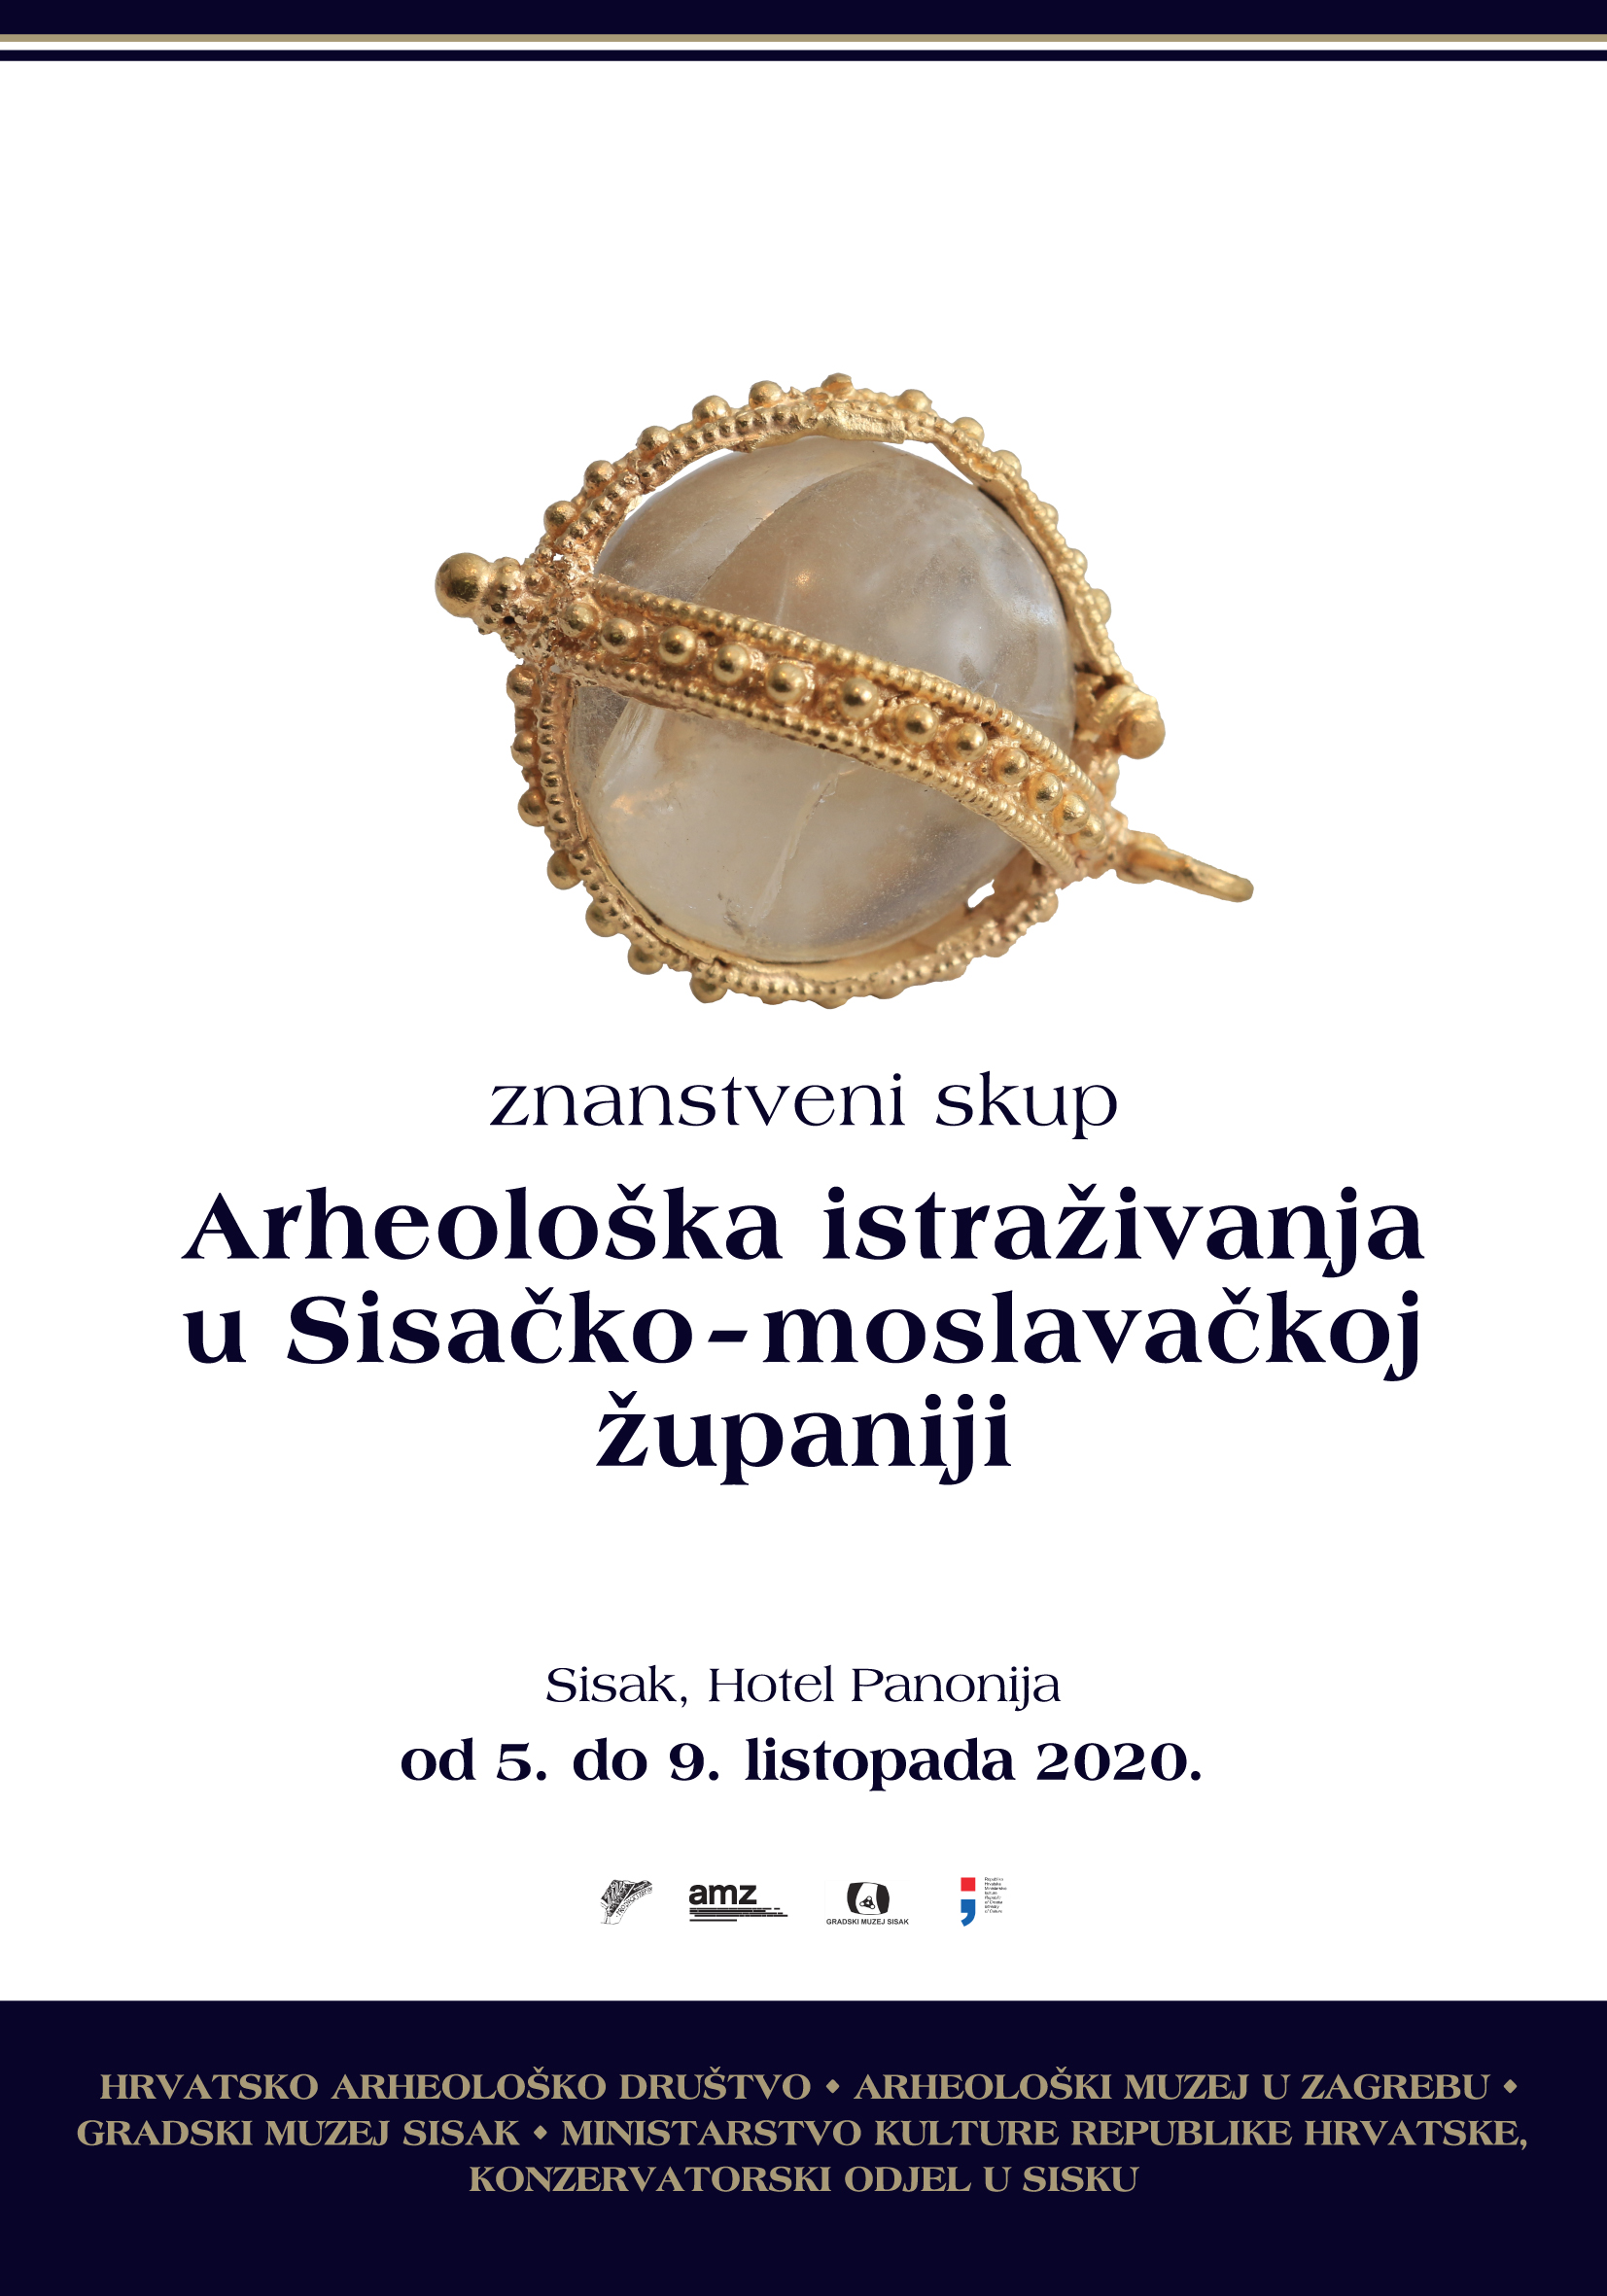 You are currently viewing Znanstveni skup Arheološka istraživanja u Sisačko-moslavačkoj županiji